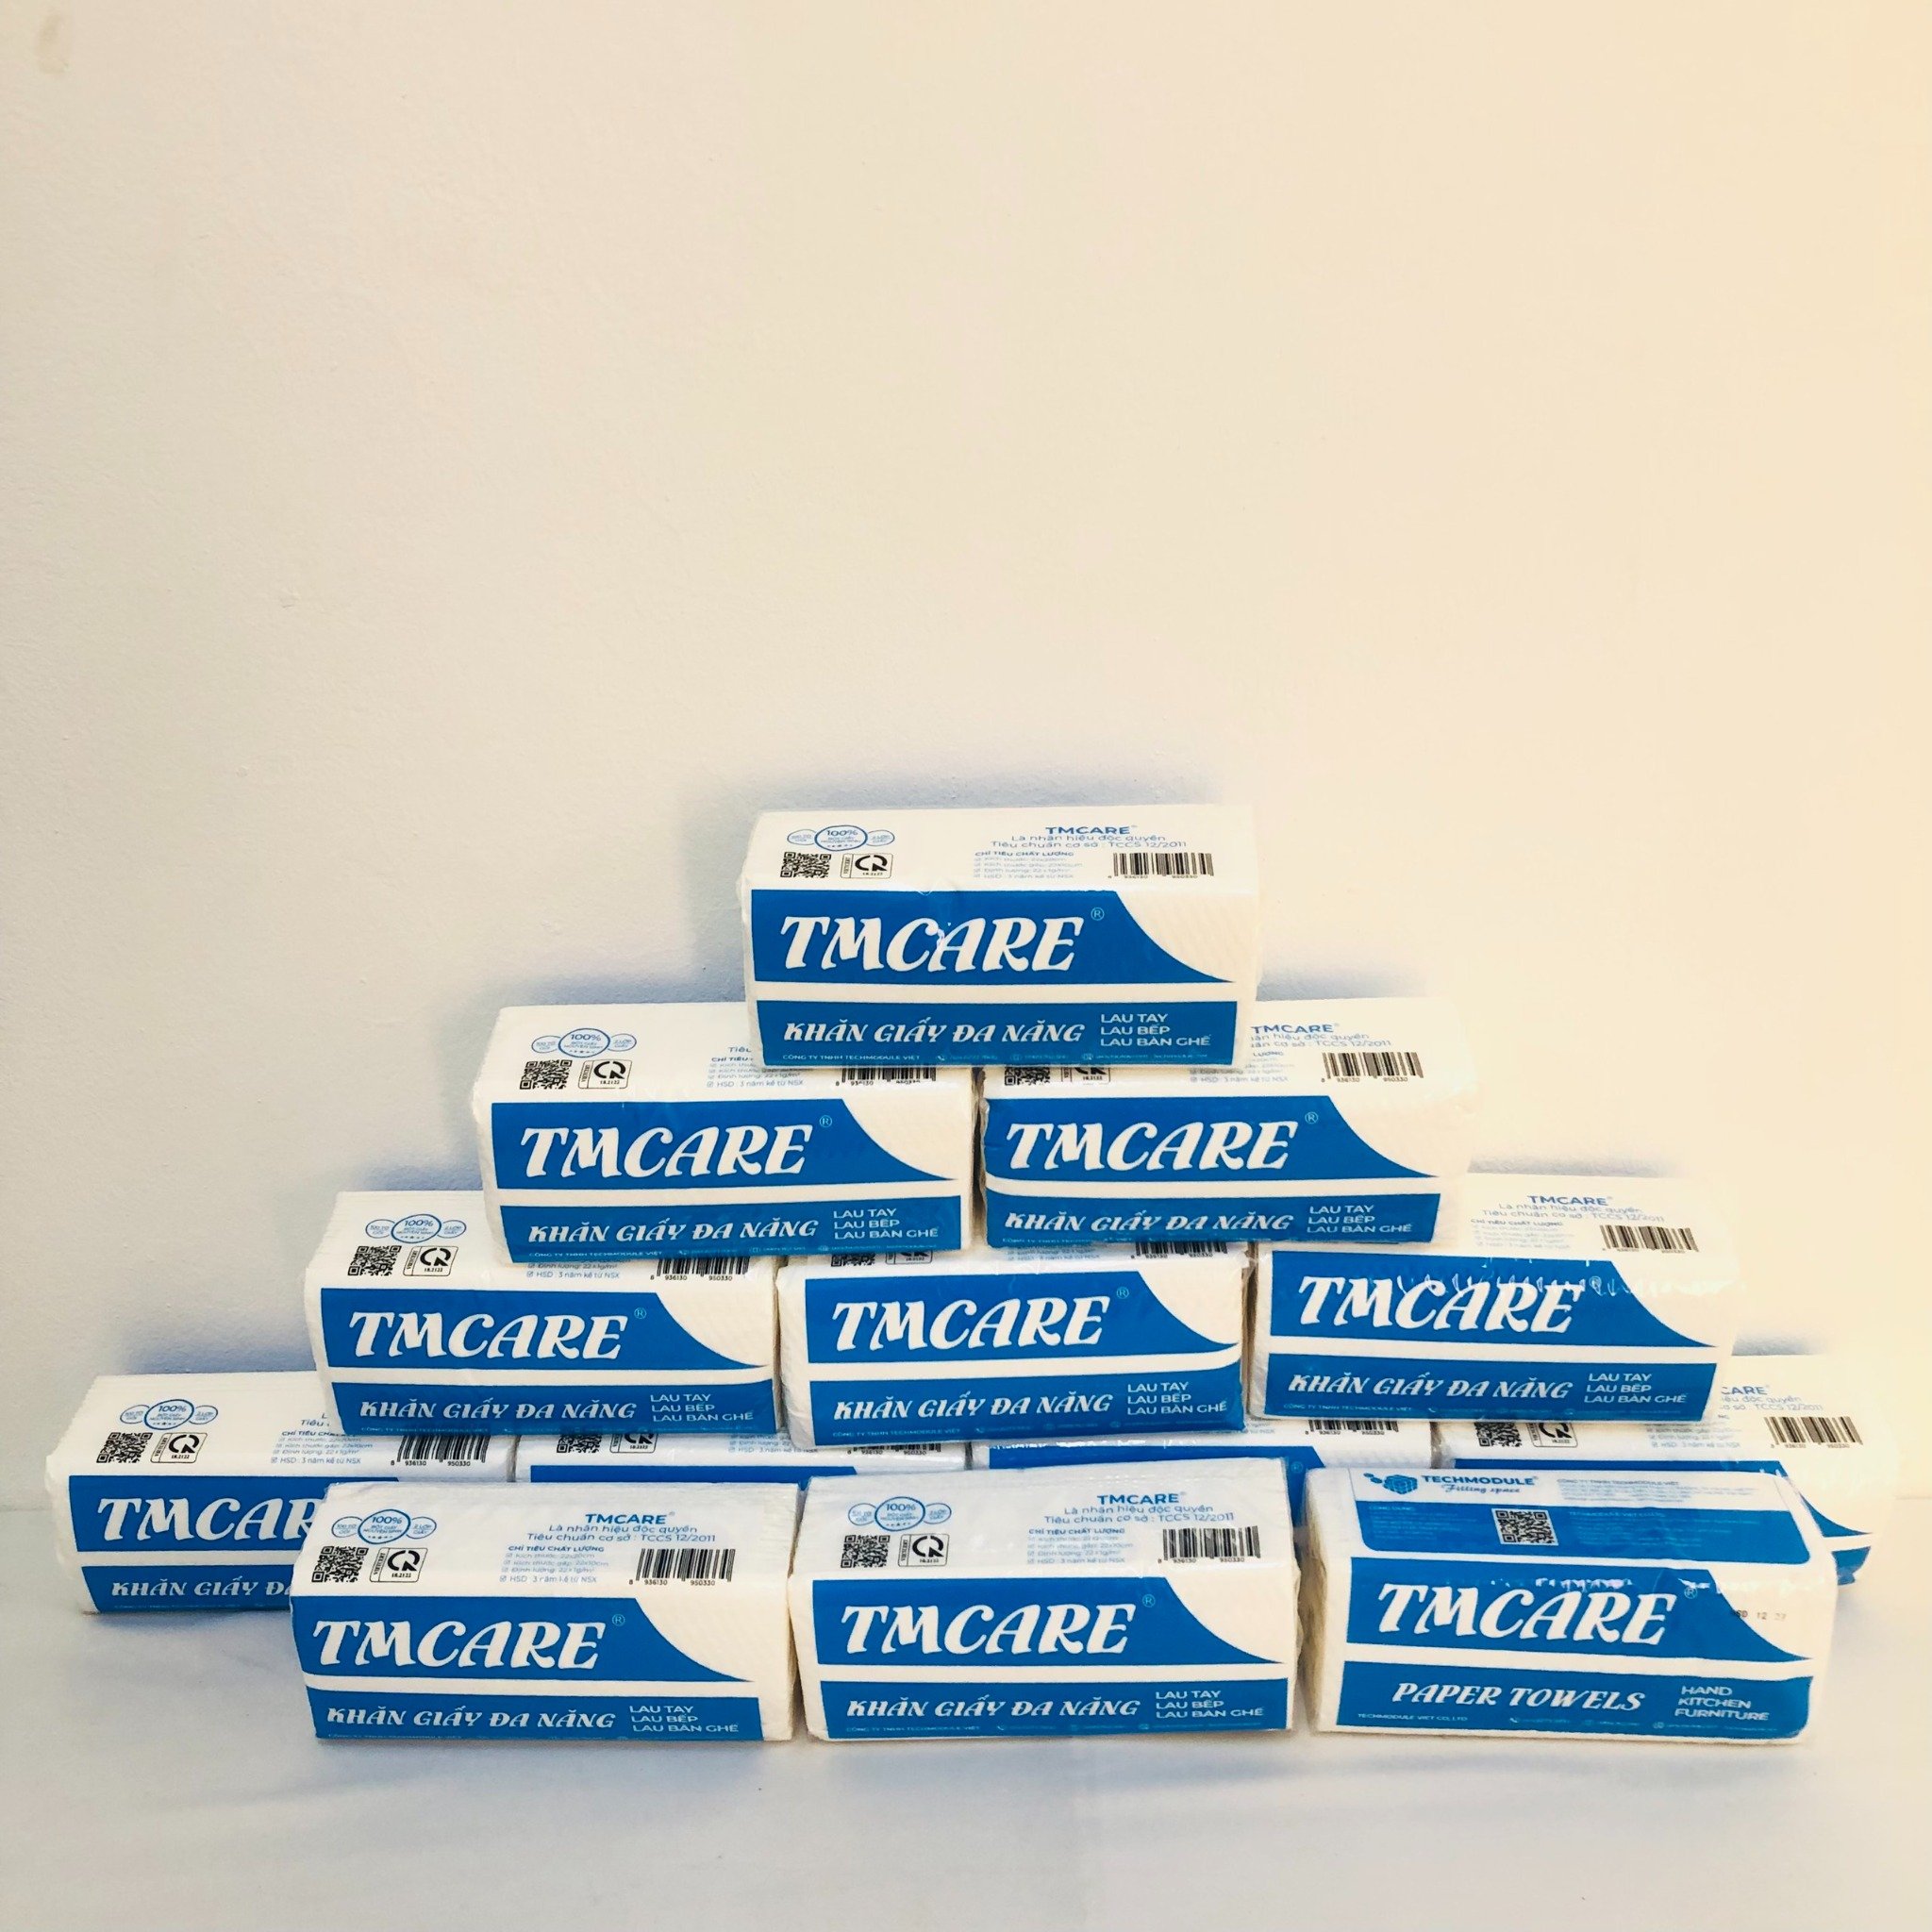 Khám phá chất lượng vượt trội của Khăn giấy TMcare Premium - Đột phá mới từ TECHMODULE